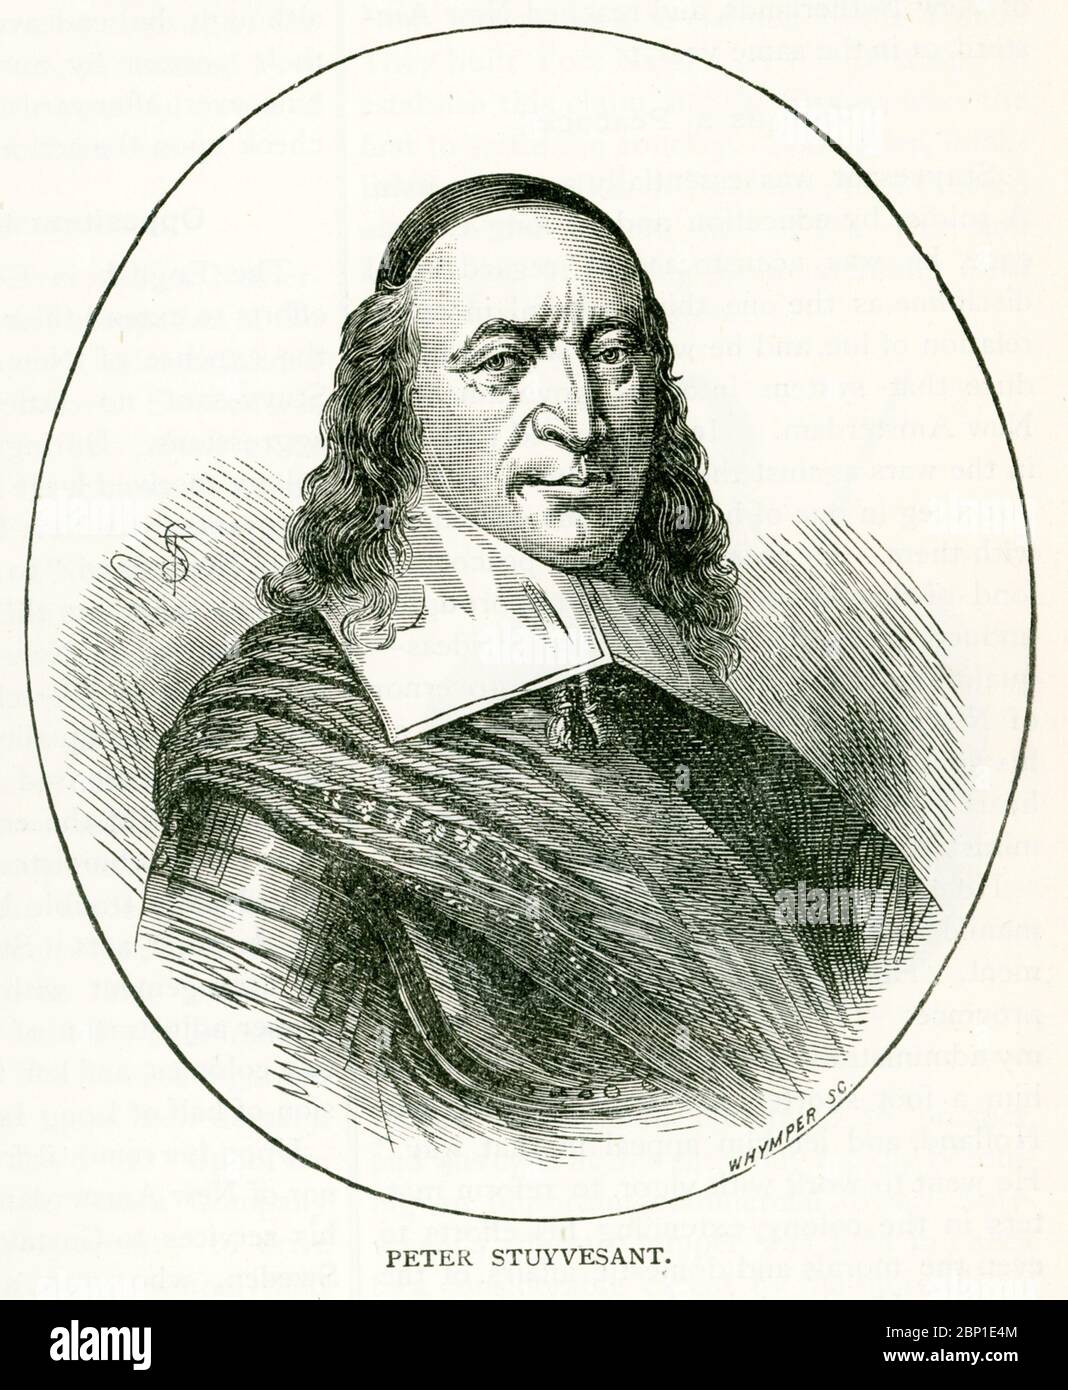 Peter Stuyvesant è stato l'ultimo Direttore Generale Olandese della colonia dei nuovi Paesi Bassi. Servì dal 1647 al 1664 quando la zona fu consegnata agli inglesi. Foto Stock